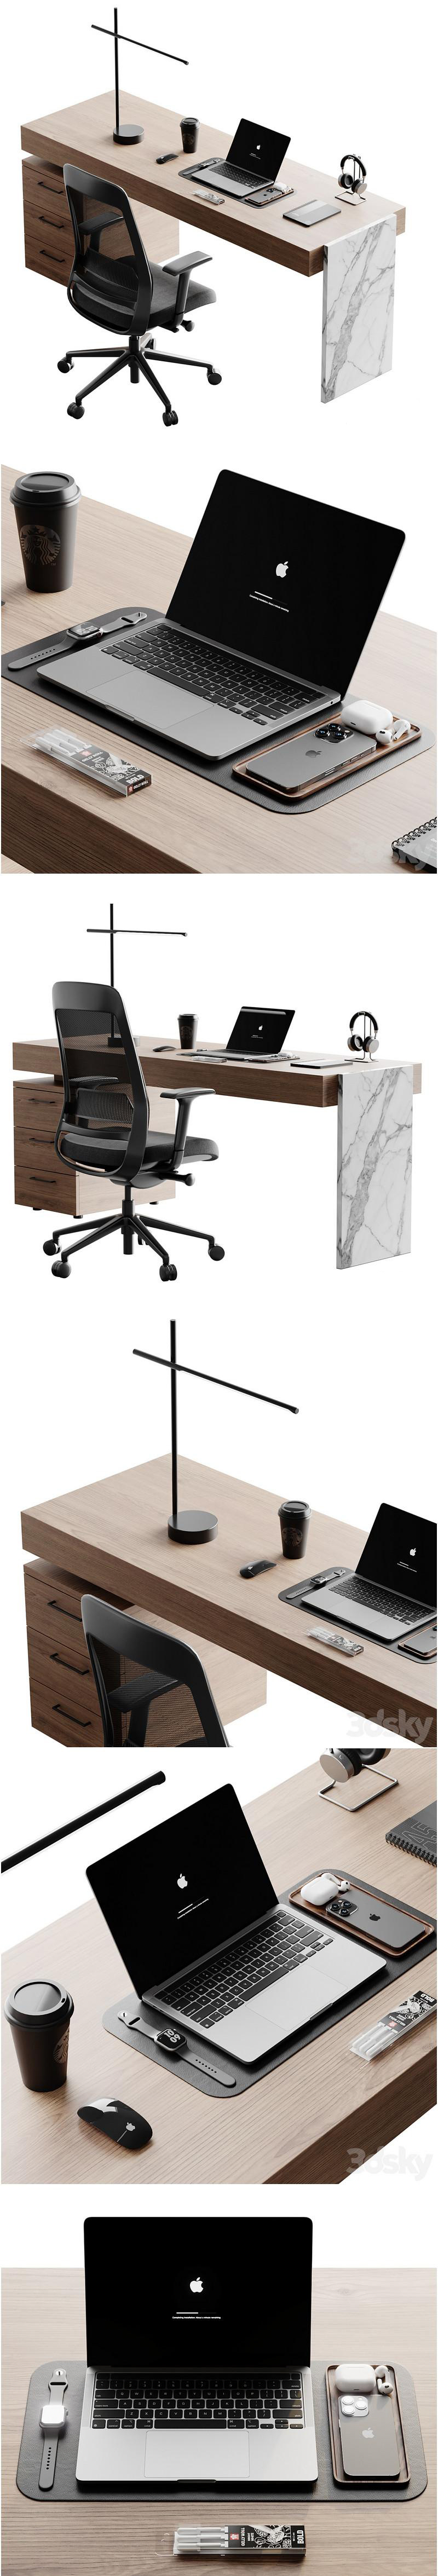 办公室内办公桌和数码设备3D模型免费下载（fbx,max,obj）